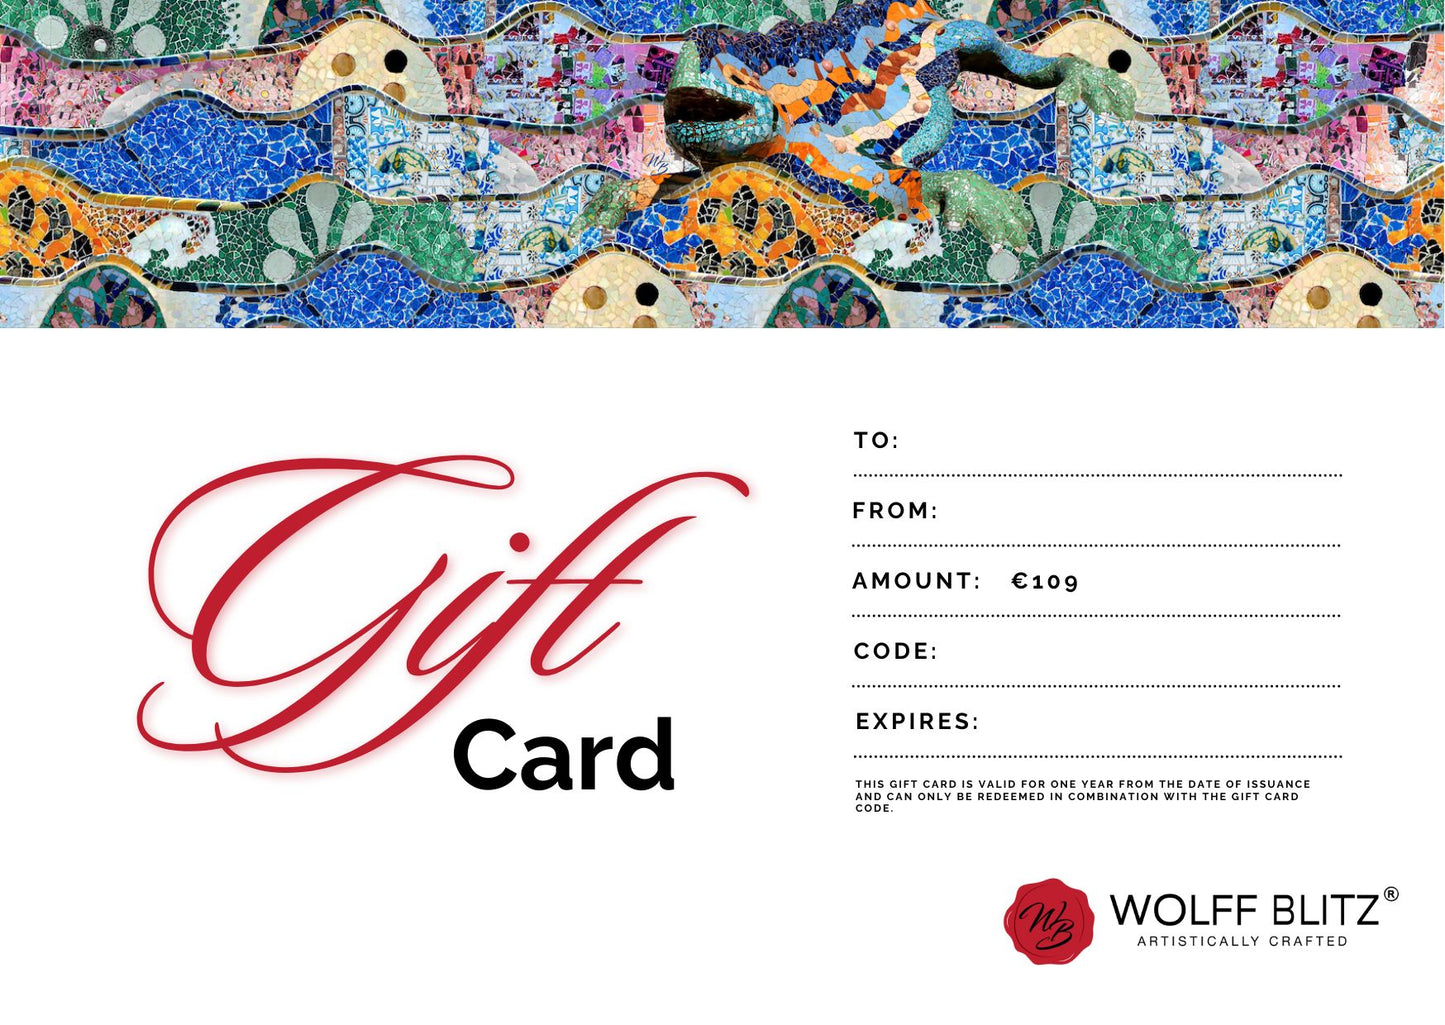 WOLFFBLITZ GIFT CARD €109